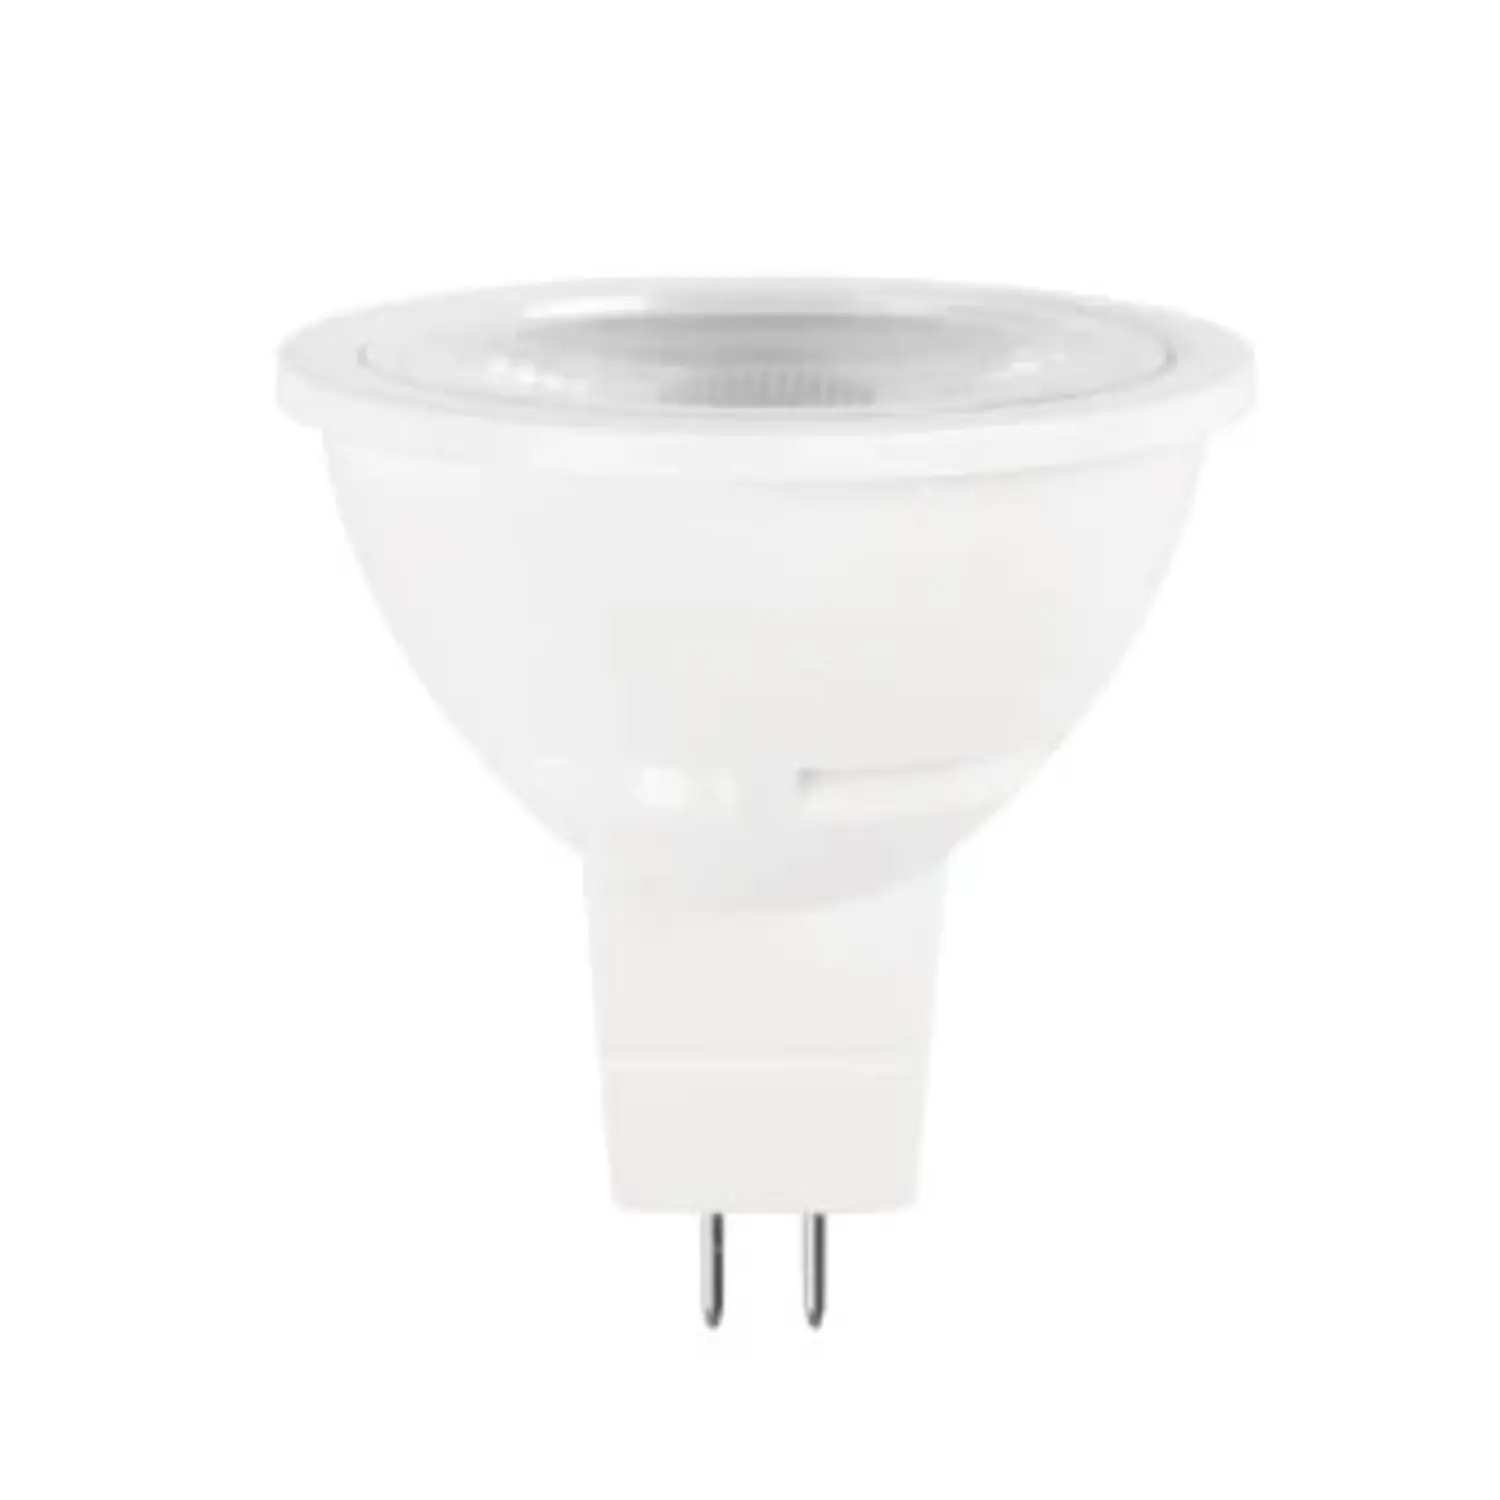 immagine del prodotto lampadina led mr16 faretti incasso 60° 220-240volt gx5,3 5,50 watt bianco caldo